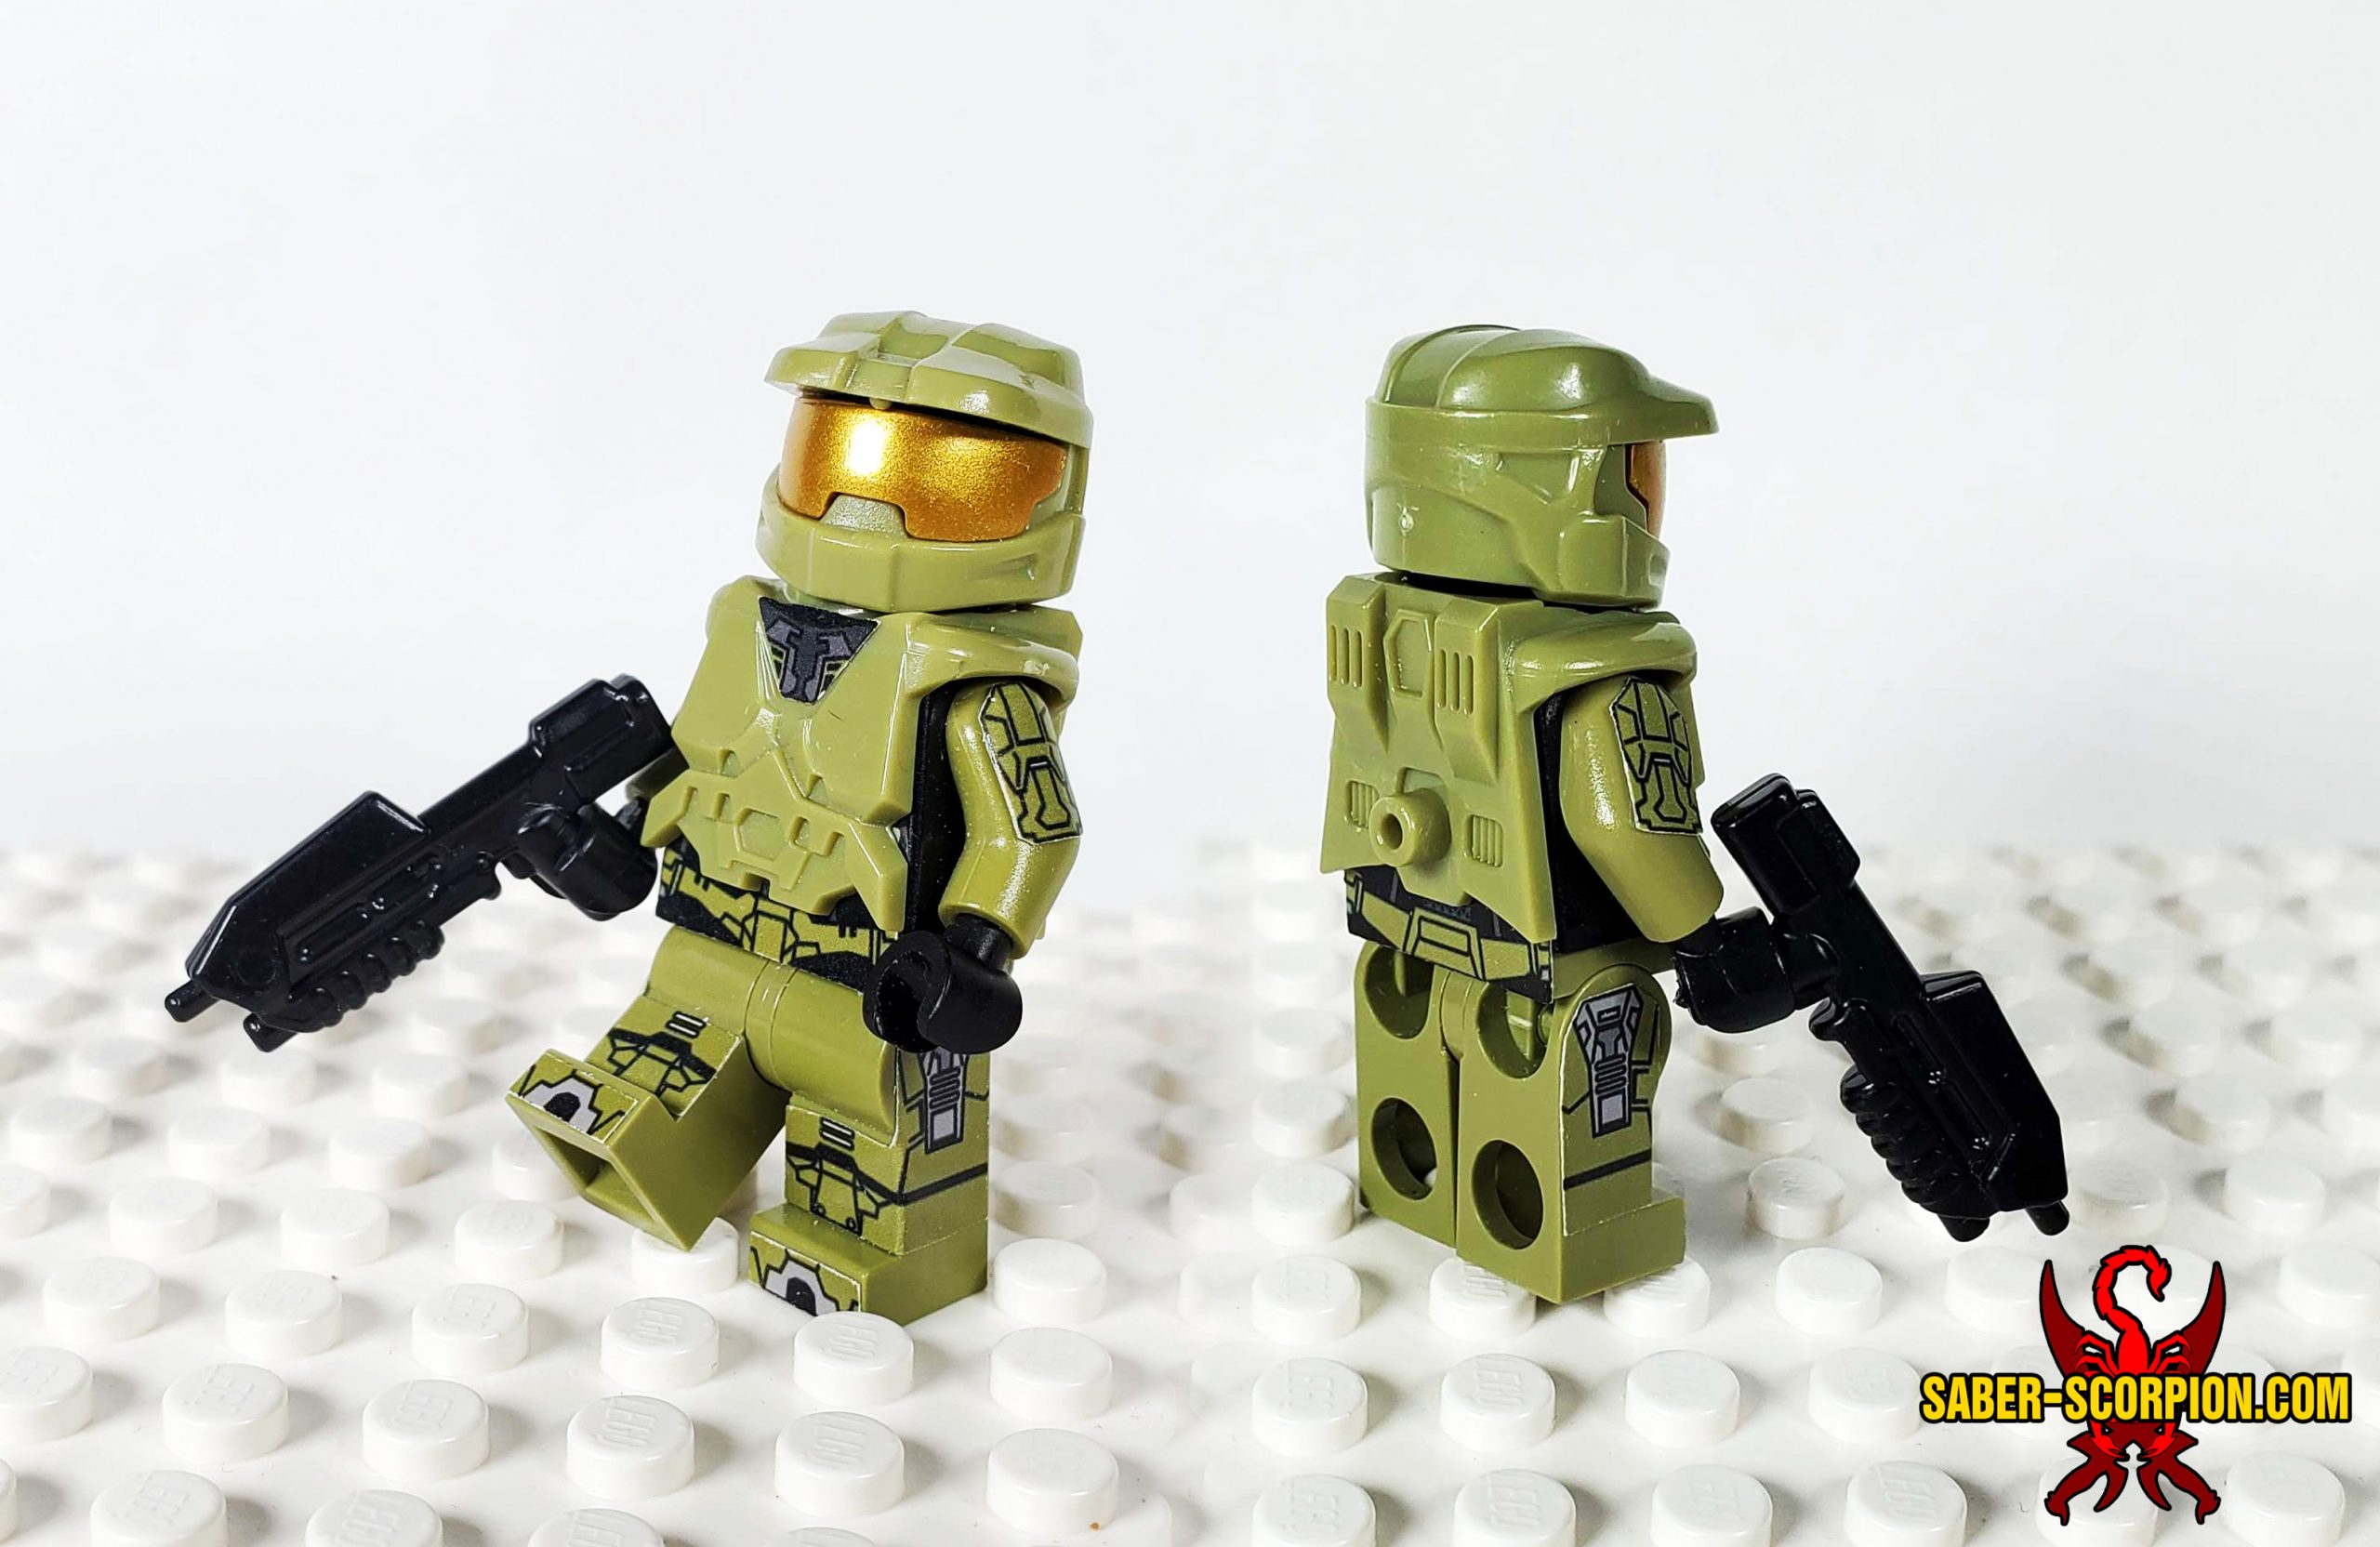 Tidsserier erhvervsdrivende I øvrigt Minifig: Alien Invasion Master Cyborg – Saber-Scorpion's Lair – Custom LEGO  Minifigs, Stickers, & Weapons